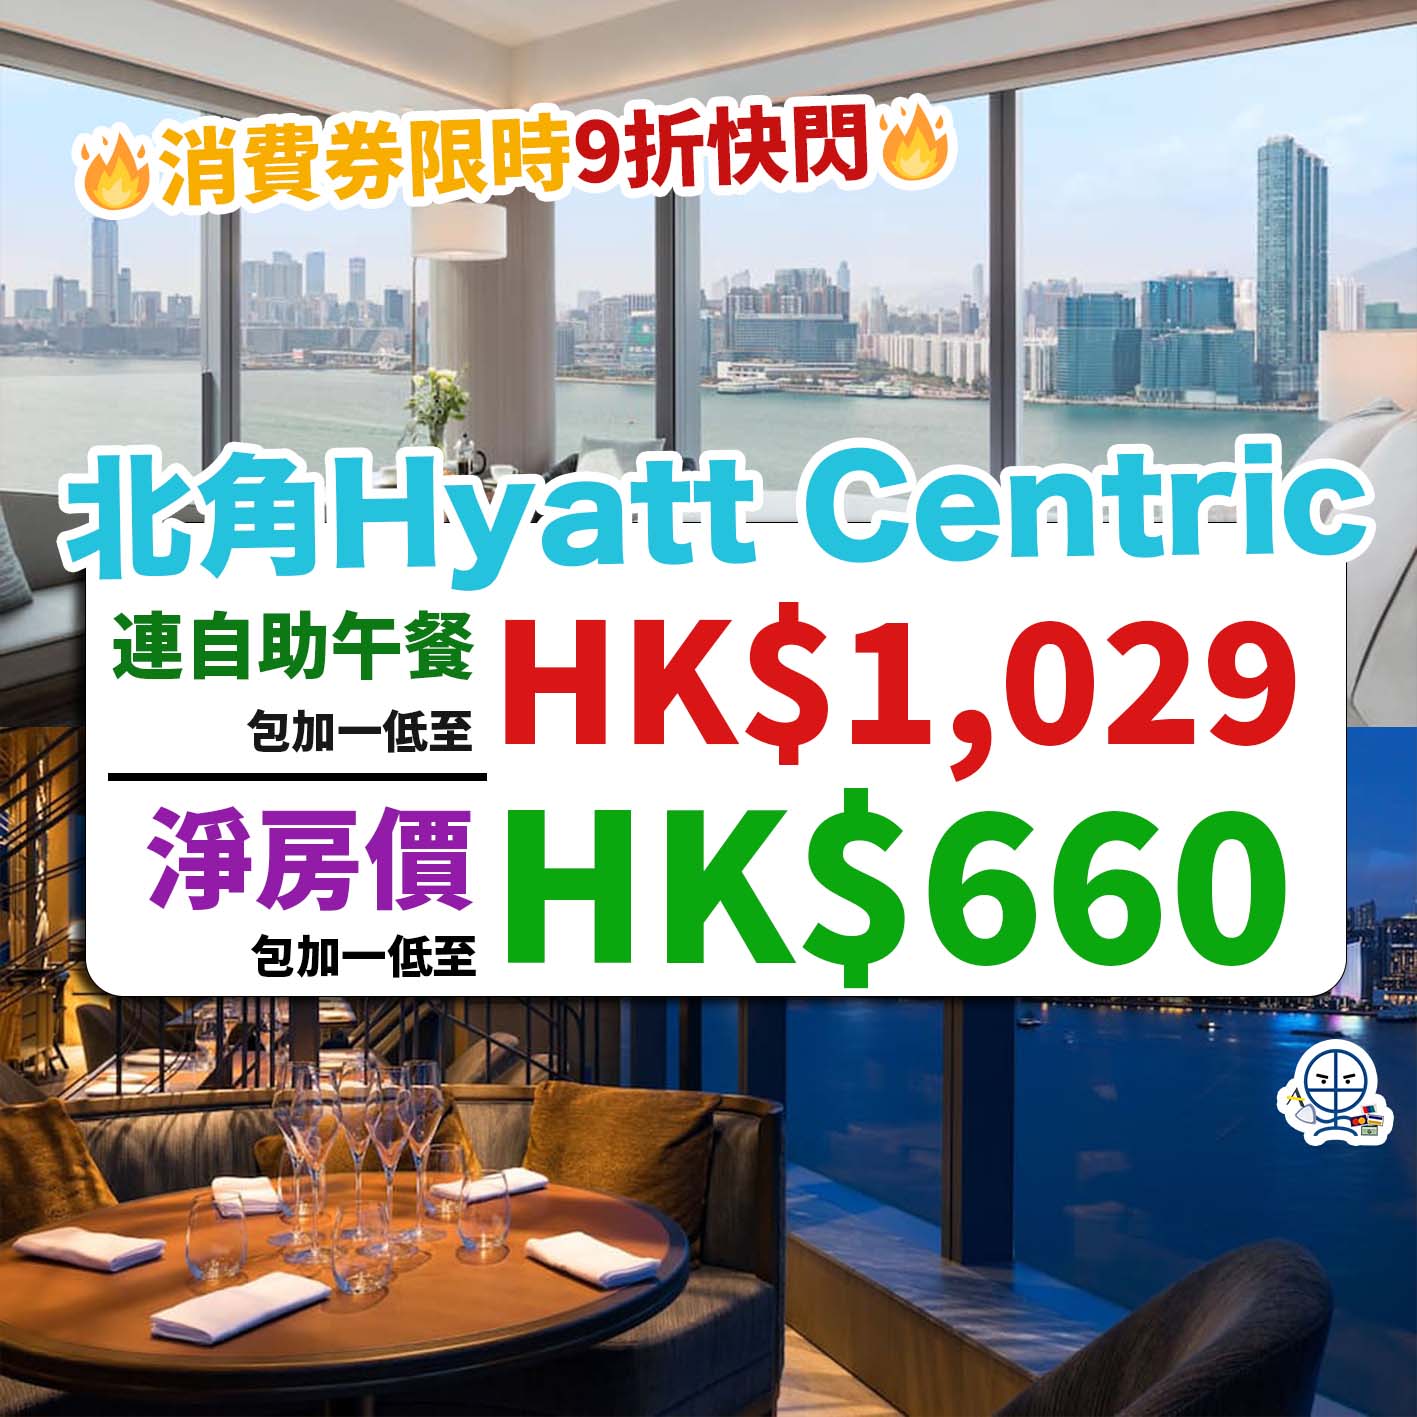 北角維港凱悅尚萃酒店-Hyatt Centric-優惠